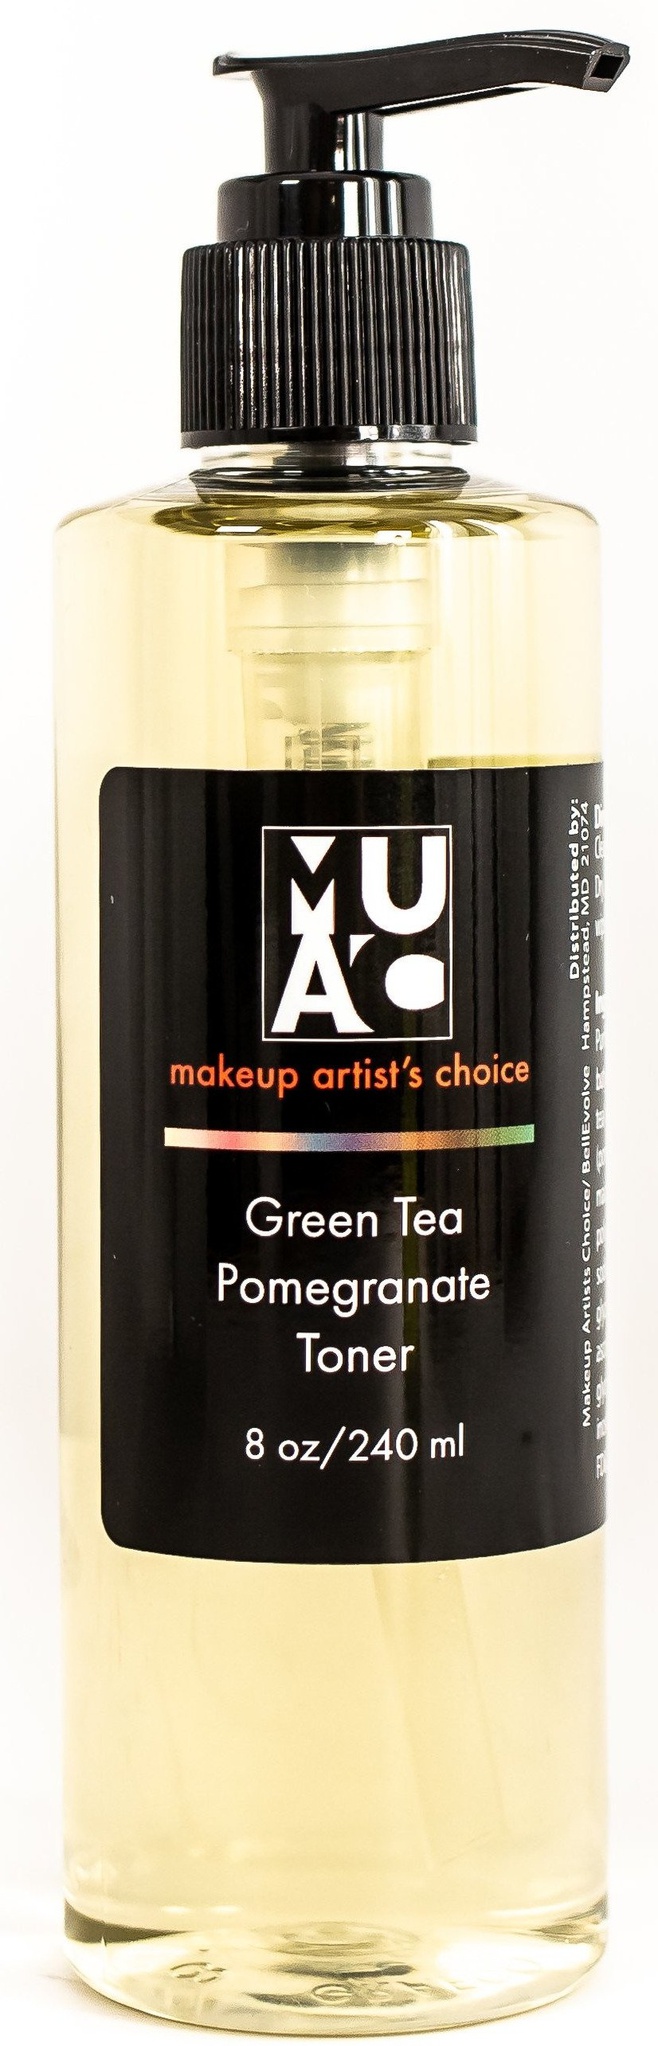 MUAC Green Tea/Pomegranate Toner